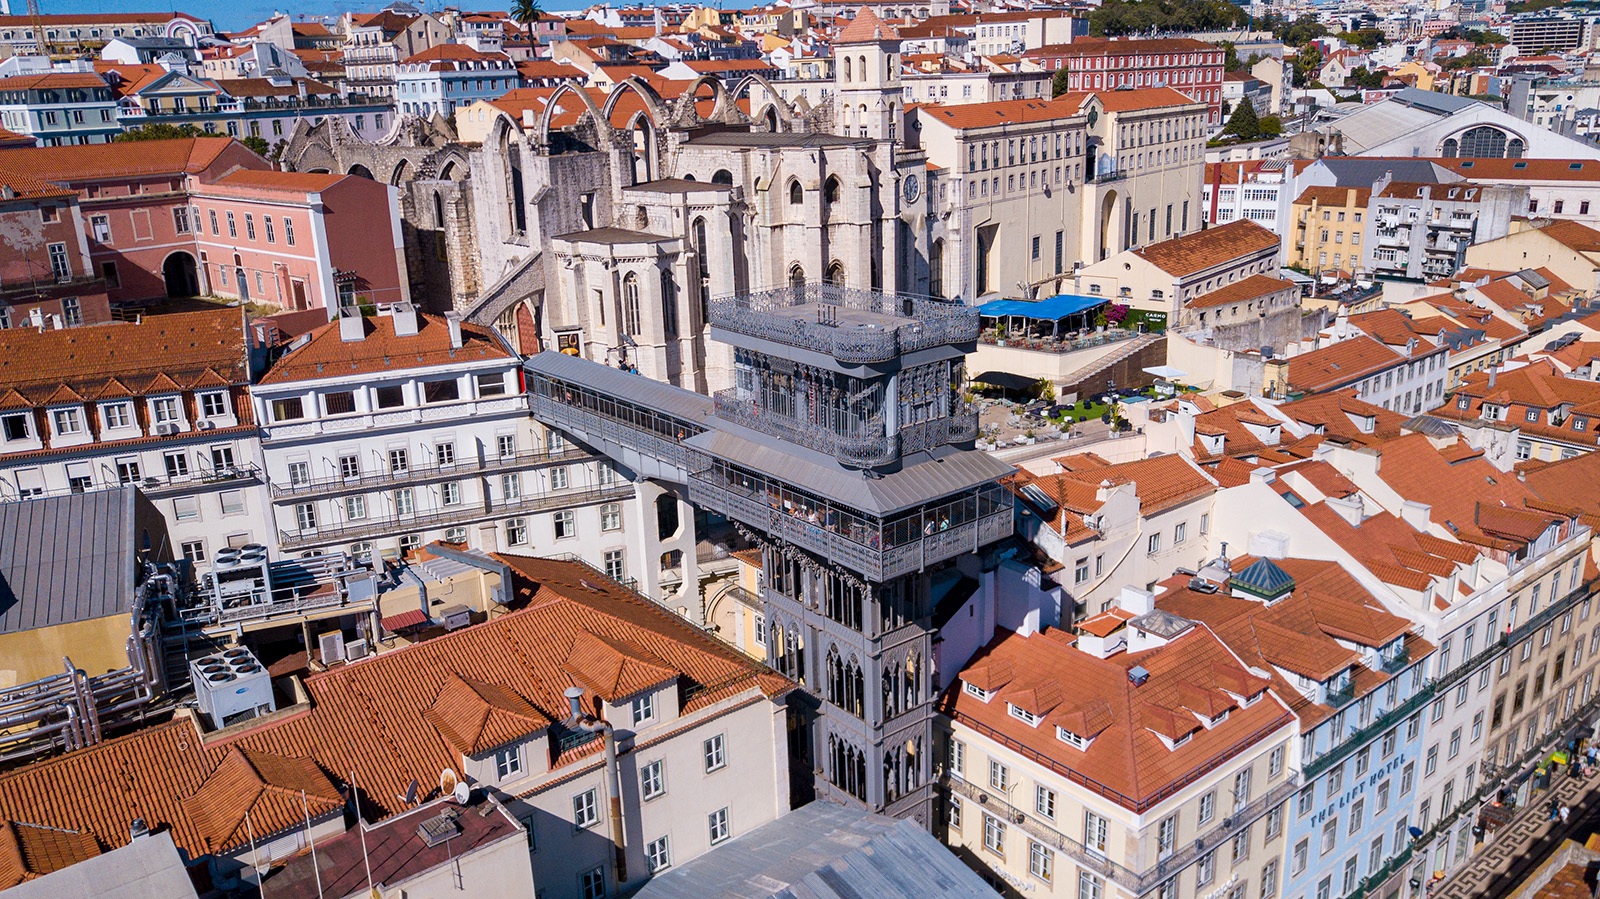 Elevador de Santa Justa do alto free walking tour Lisboa